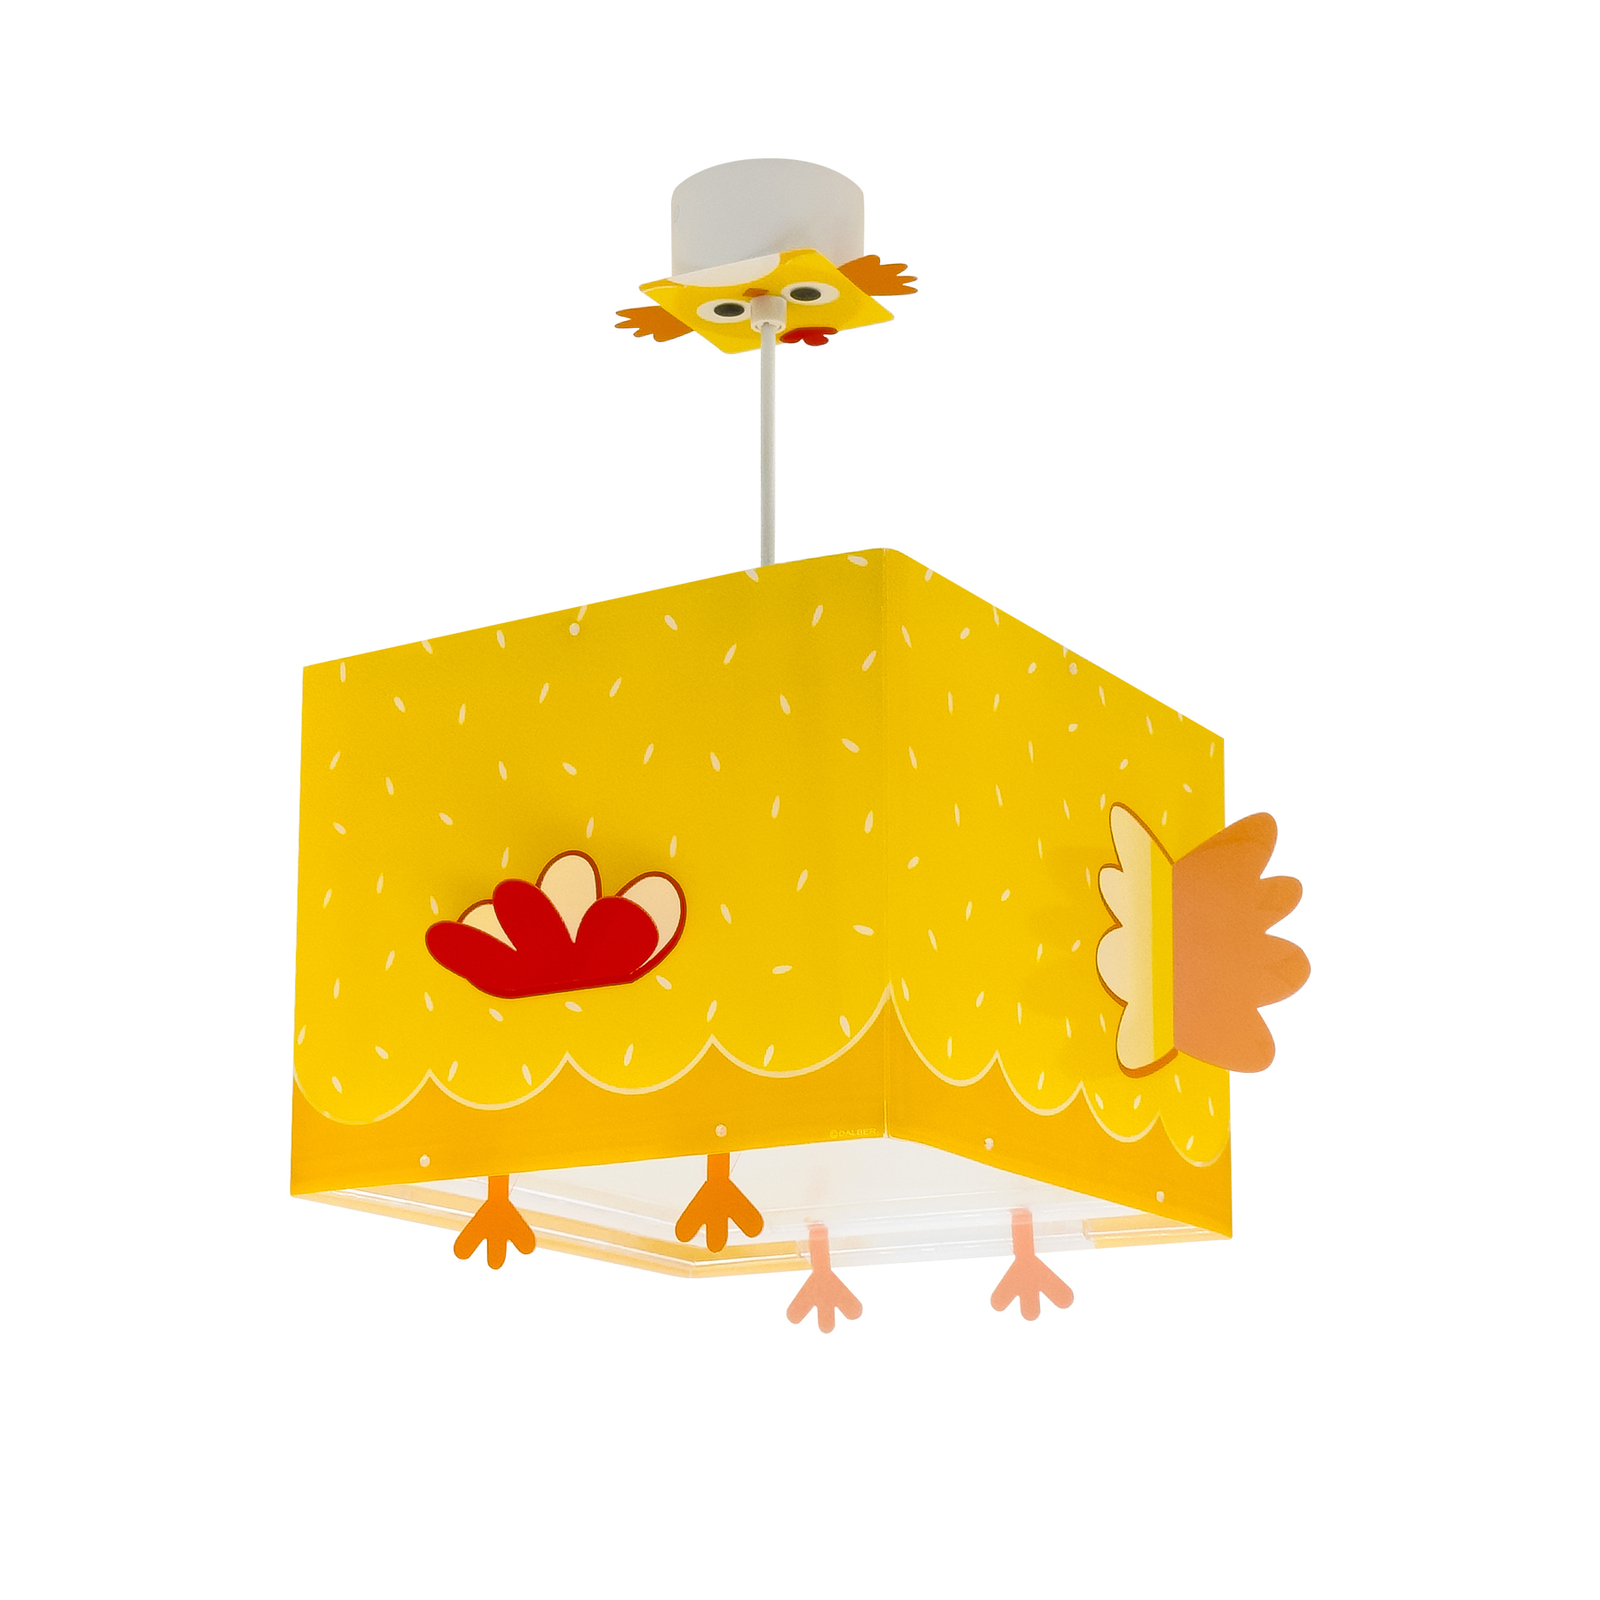 Dalber Little Chicken pendant light for children